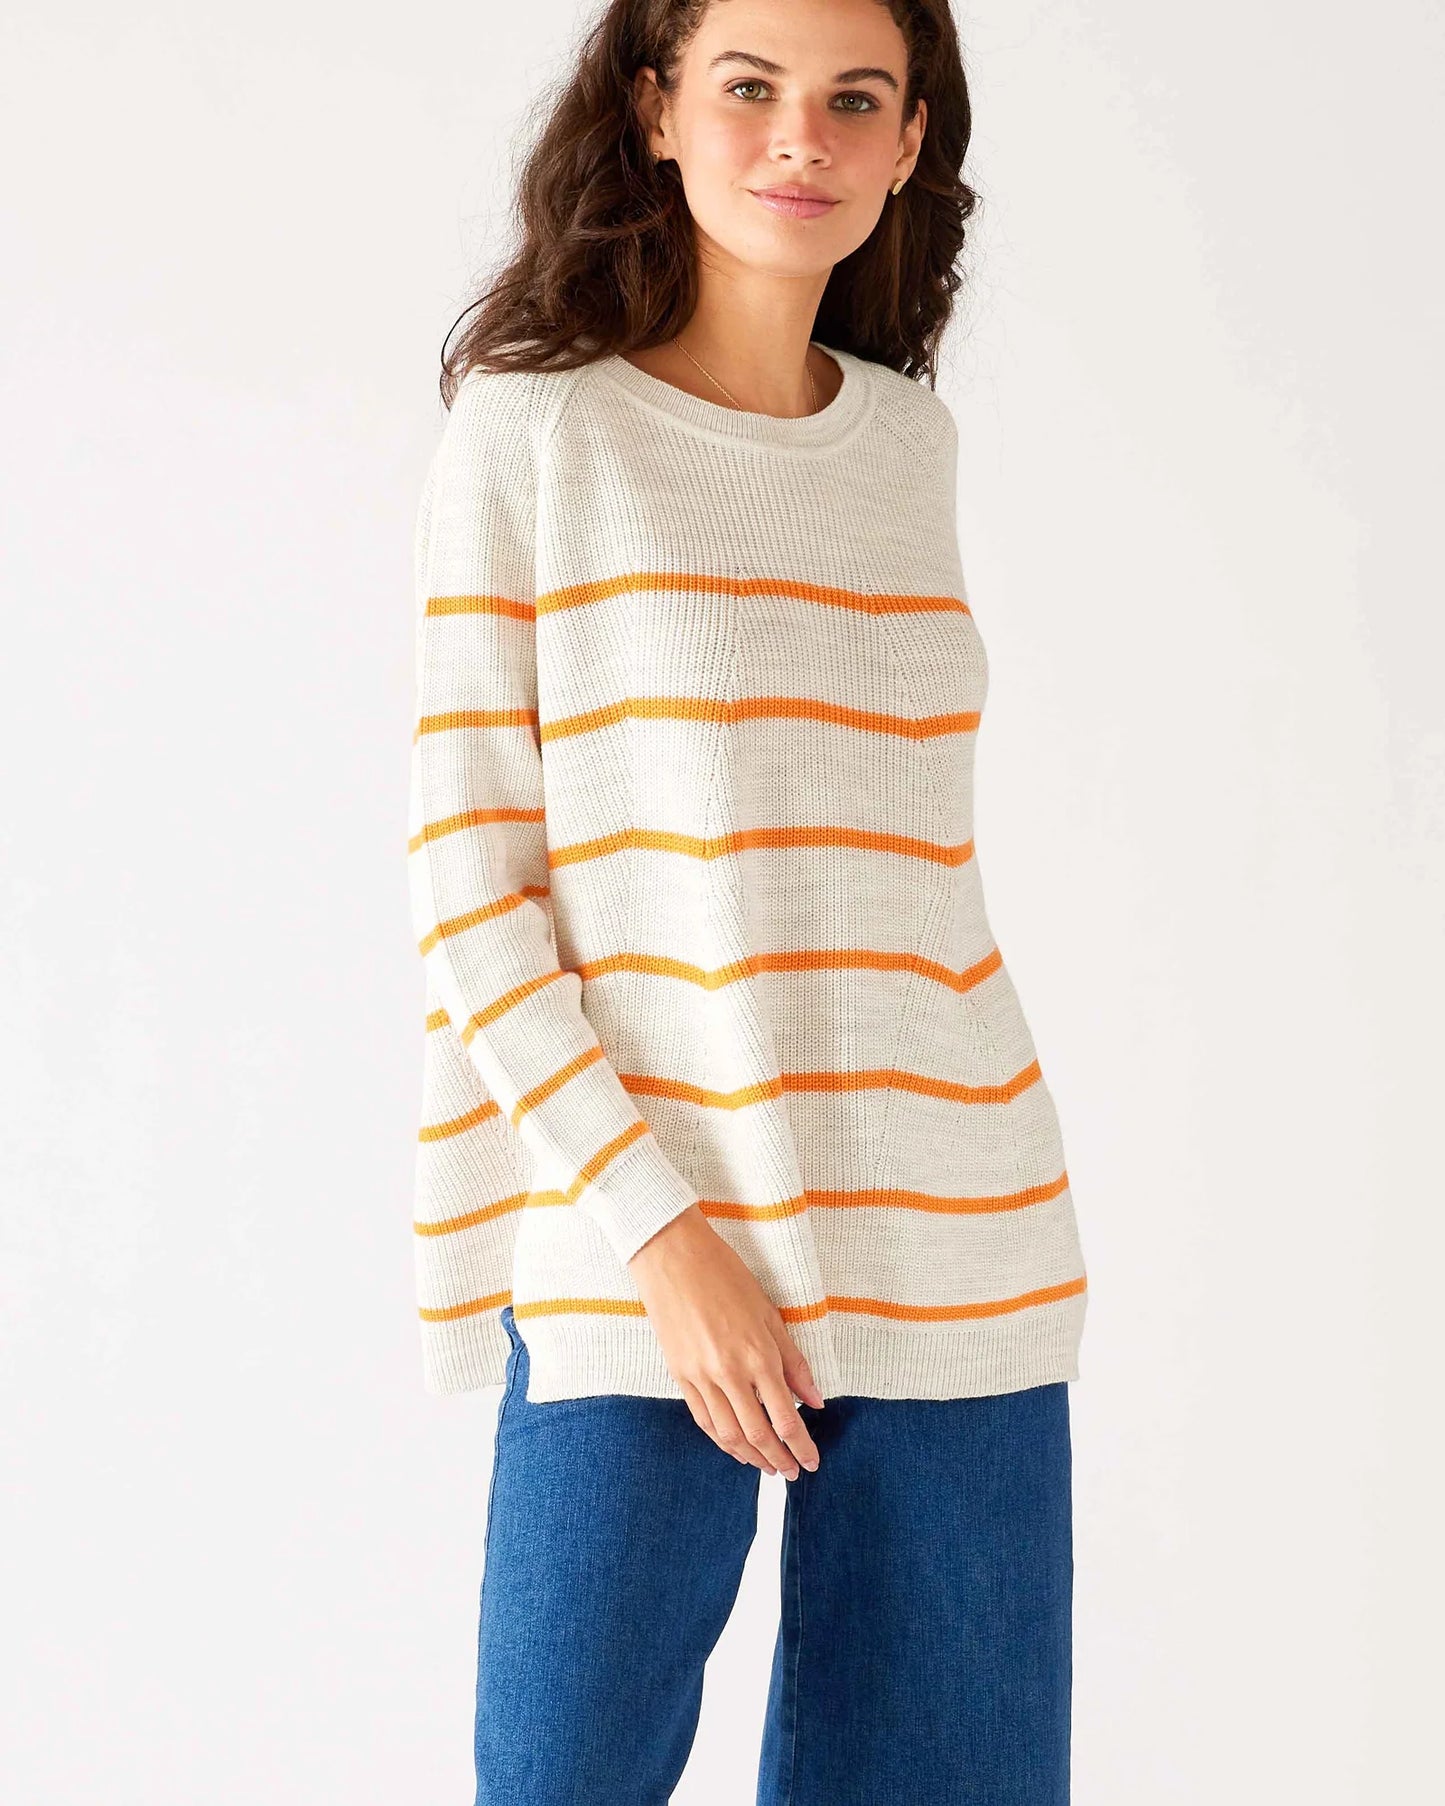 MerSea - Camden Boatneck Sweater - Dreamsicle Stripe